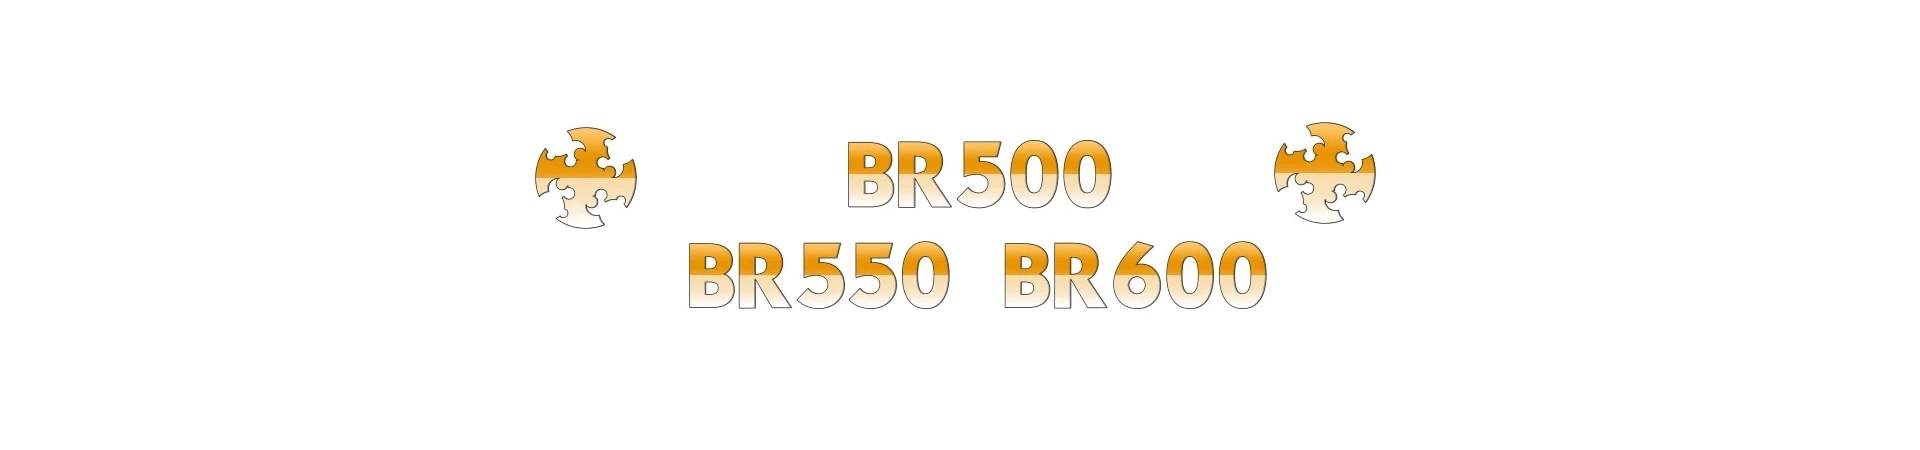 BR500 BR550 BR600